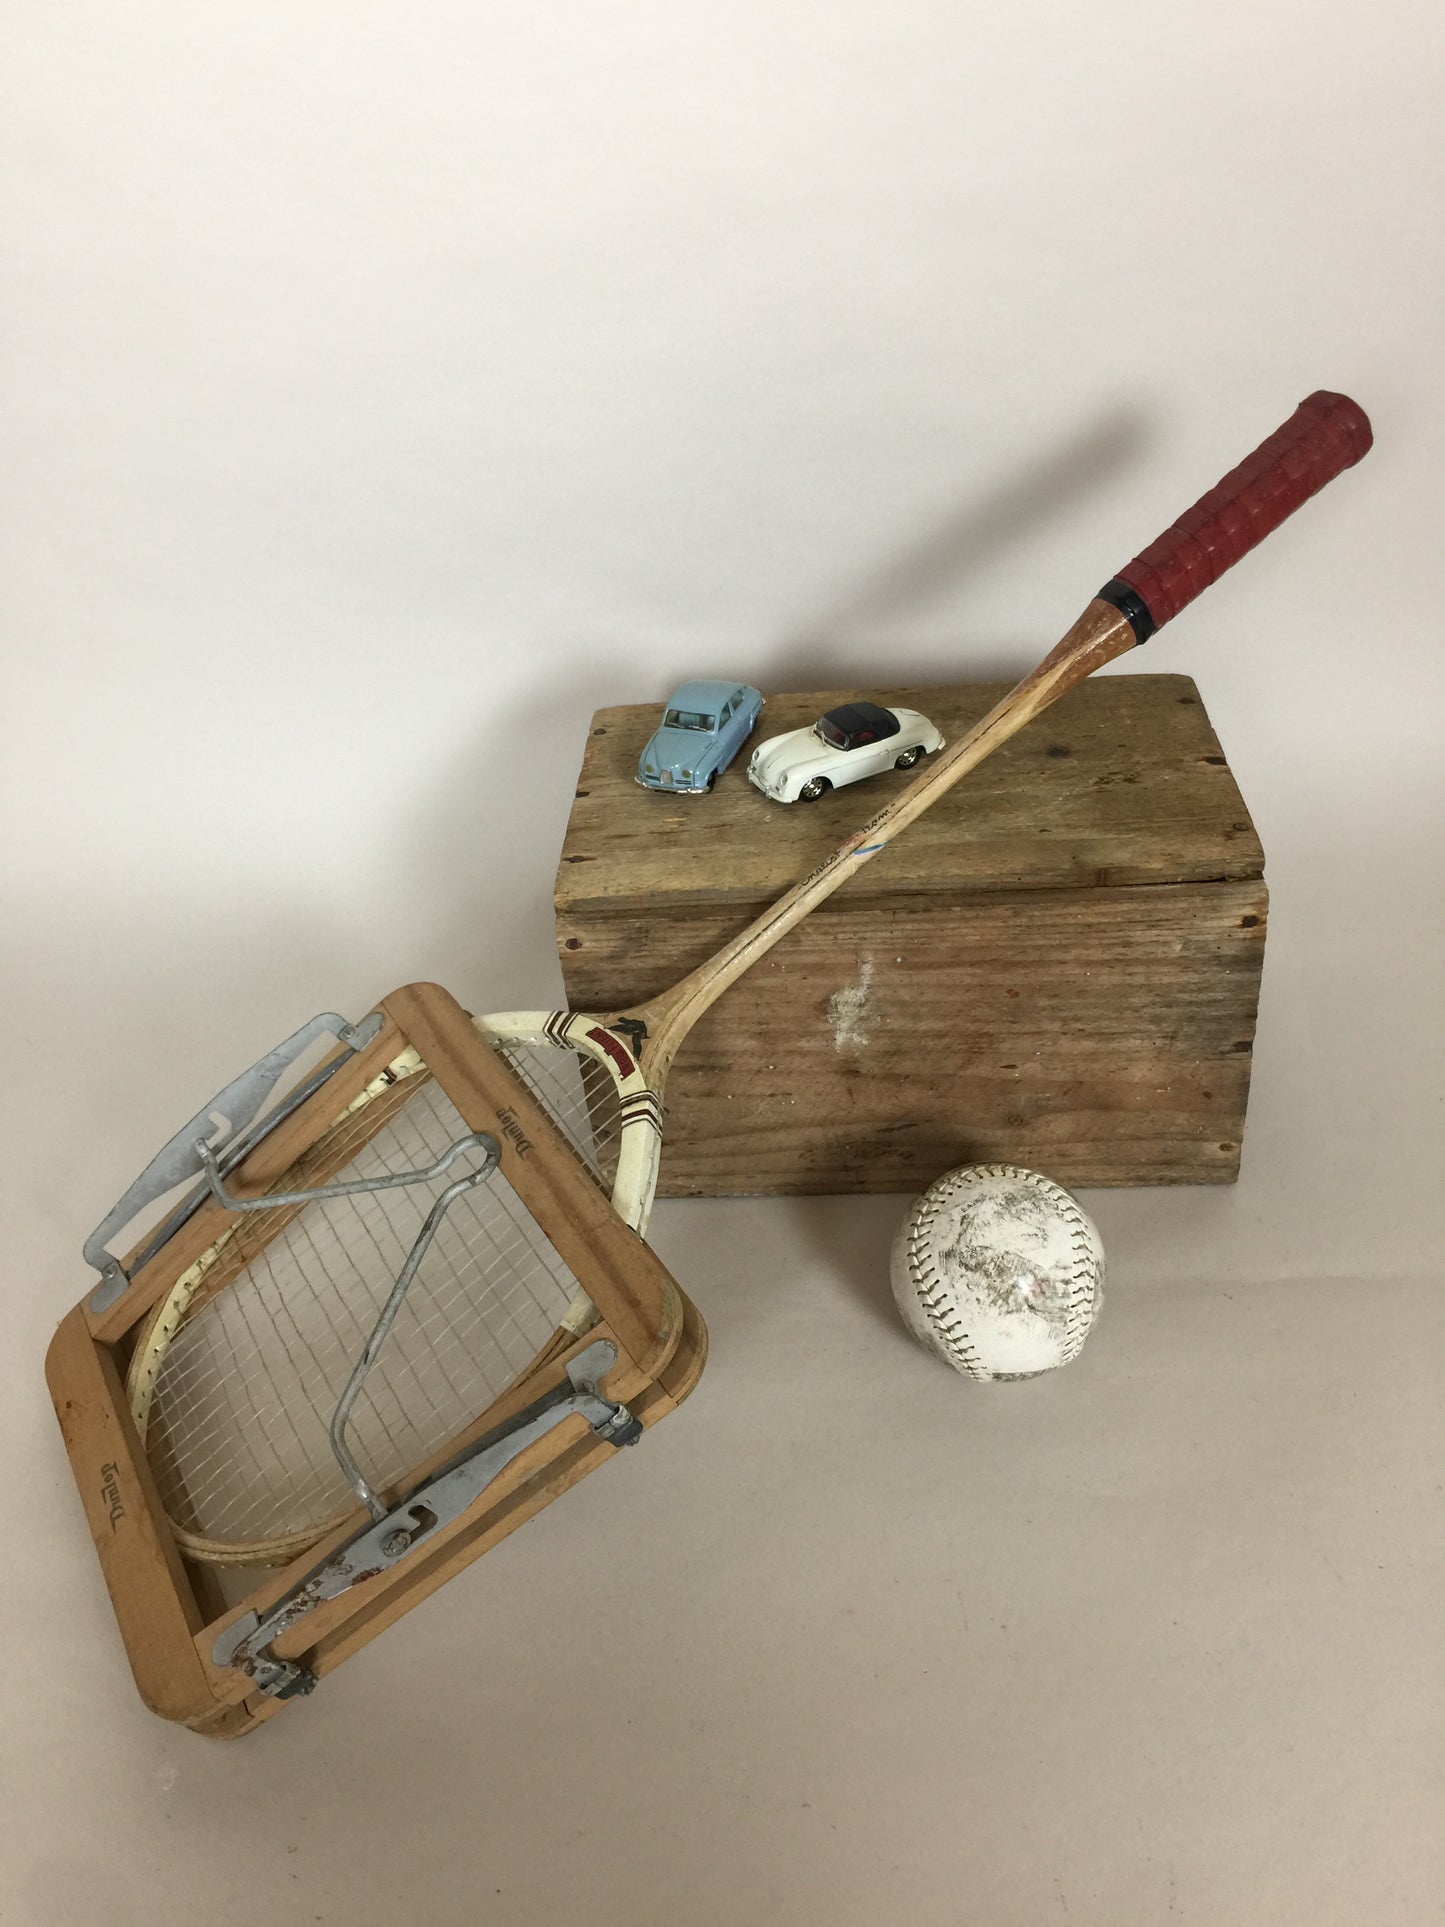 Gammel og dekorativ badmintonketcher med ramme